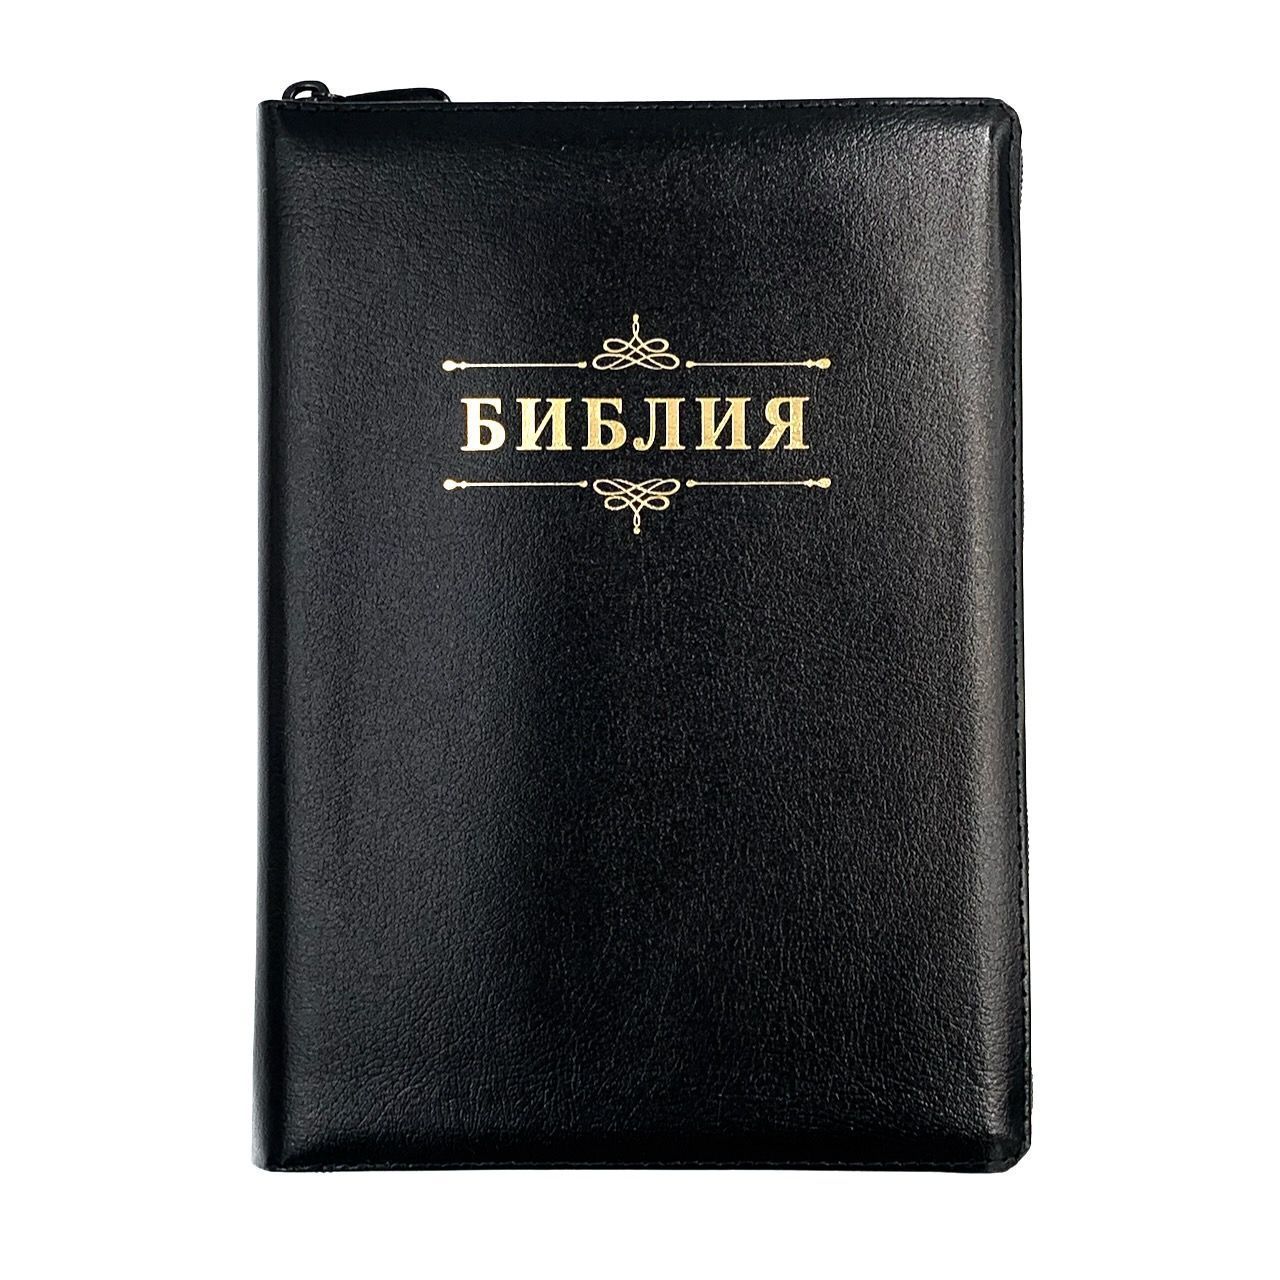 Библия 076z код 23076-21,  надпись "Библия" золотом , кожаный переплет на молнии, цвет черный металлик пятнистый, размер 180x243 мм